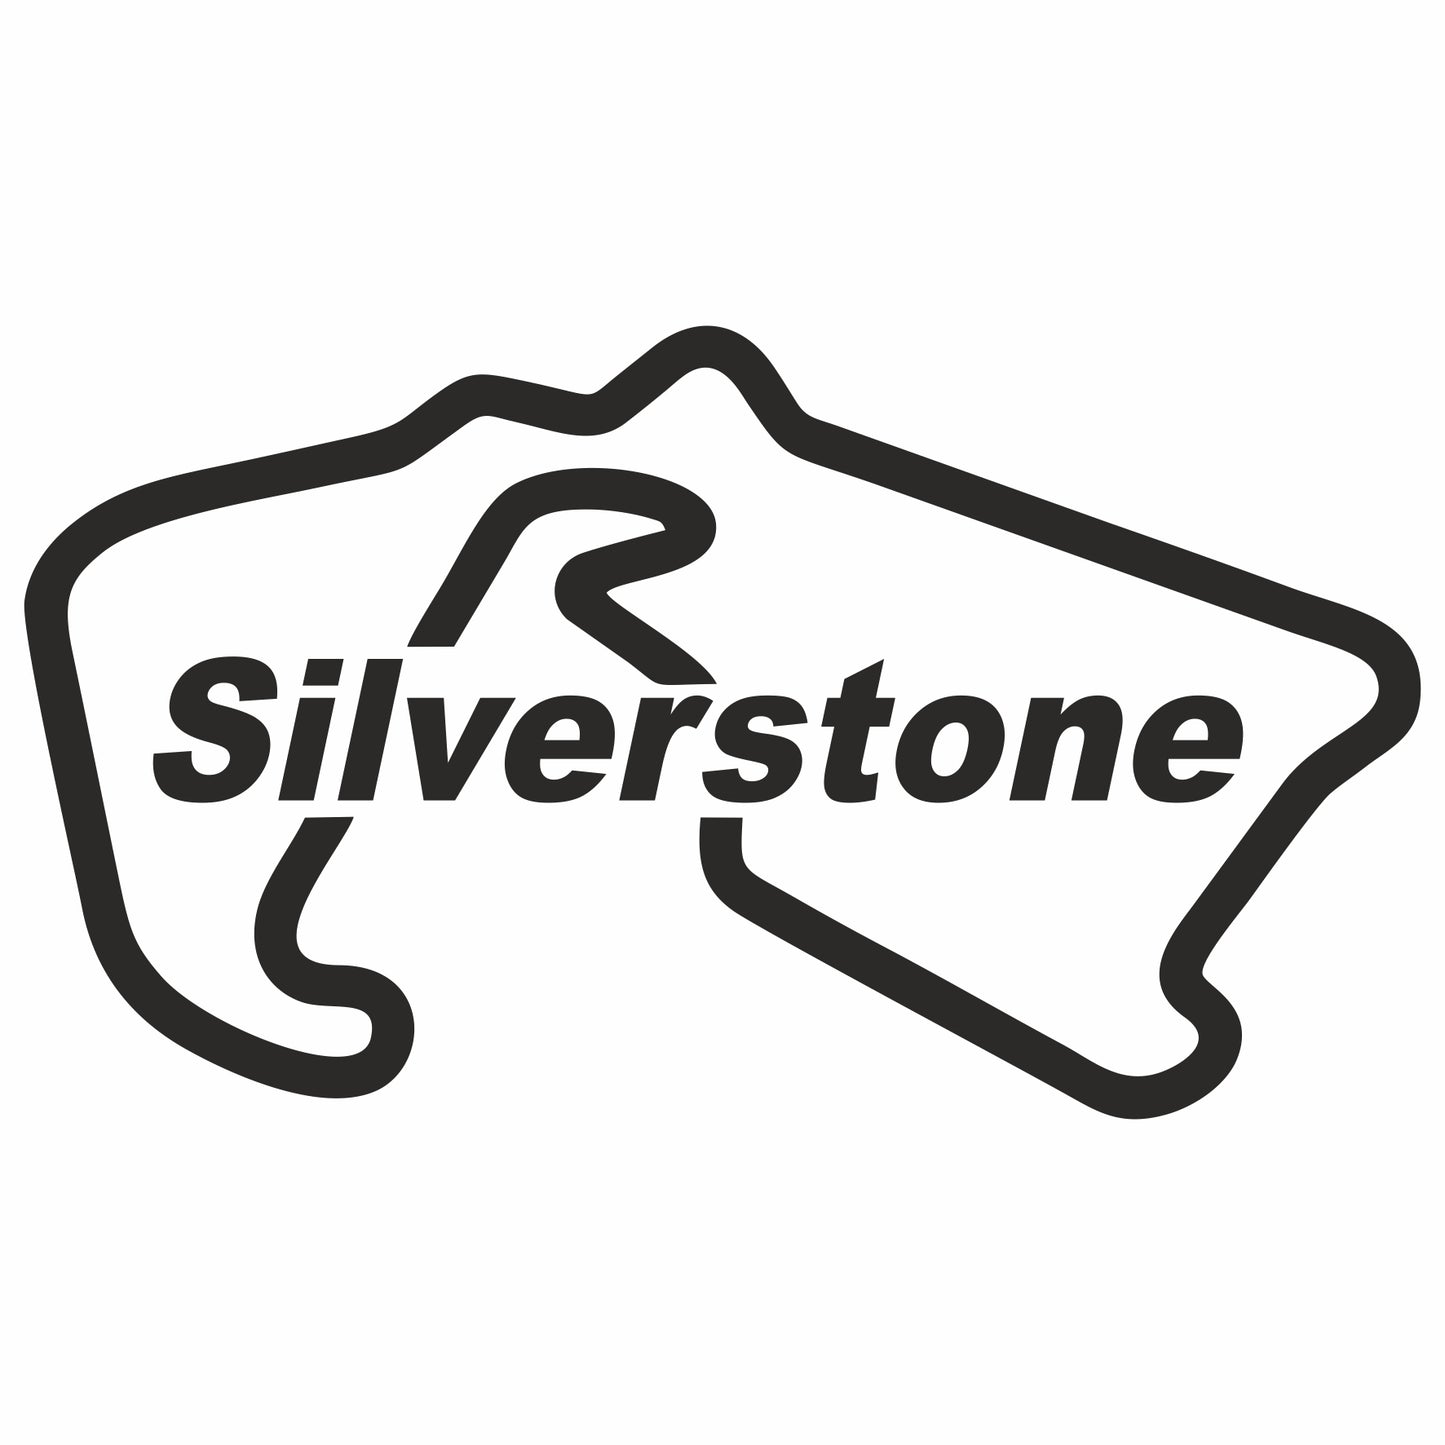 Silverstone Sticker